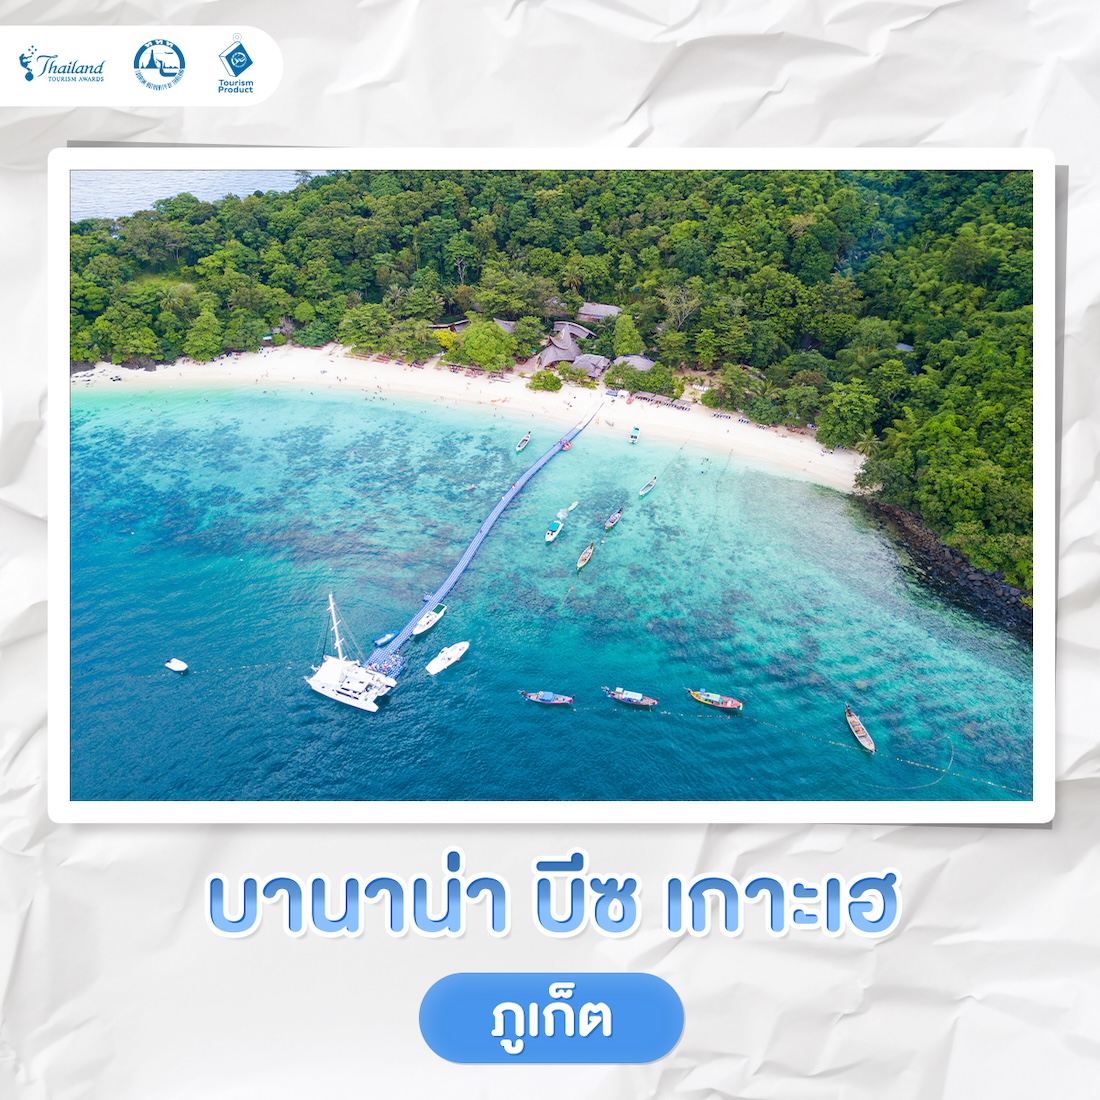 5 แลนด์มาร์ค เที่ยวเปิดประสบการณ์ใหม่ รางวัล Thailand Tourism Awards บานาน่า บีซ เกาะเฮ จ.ภูเก็ต